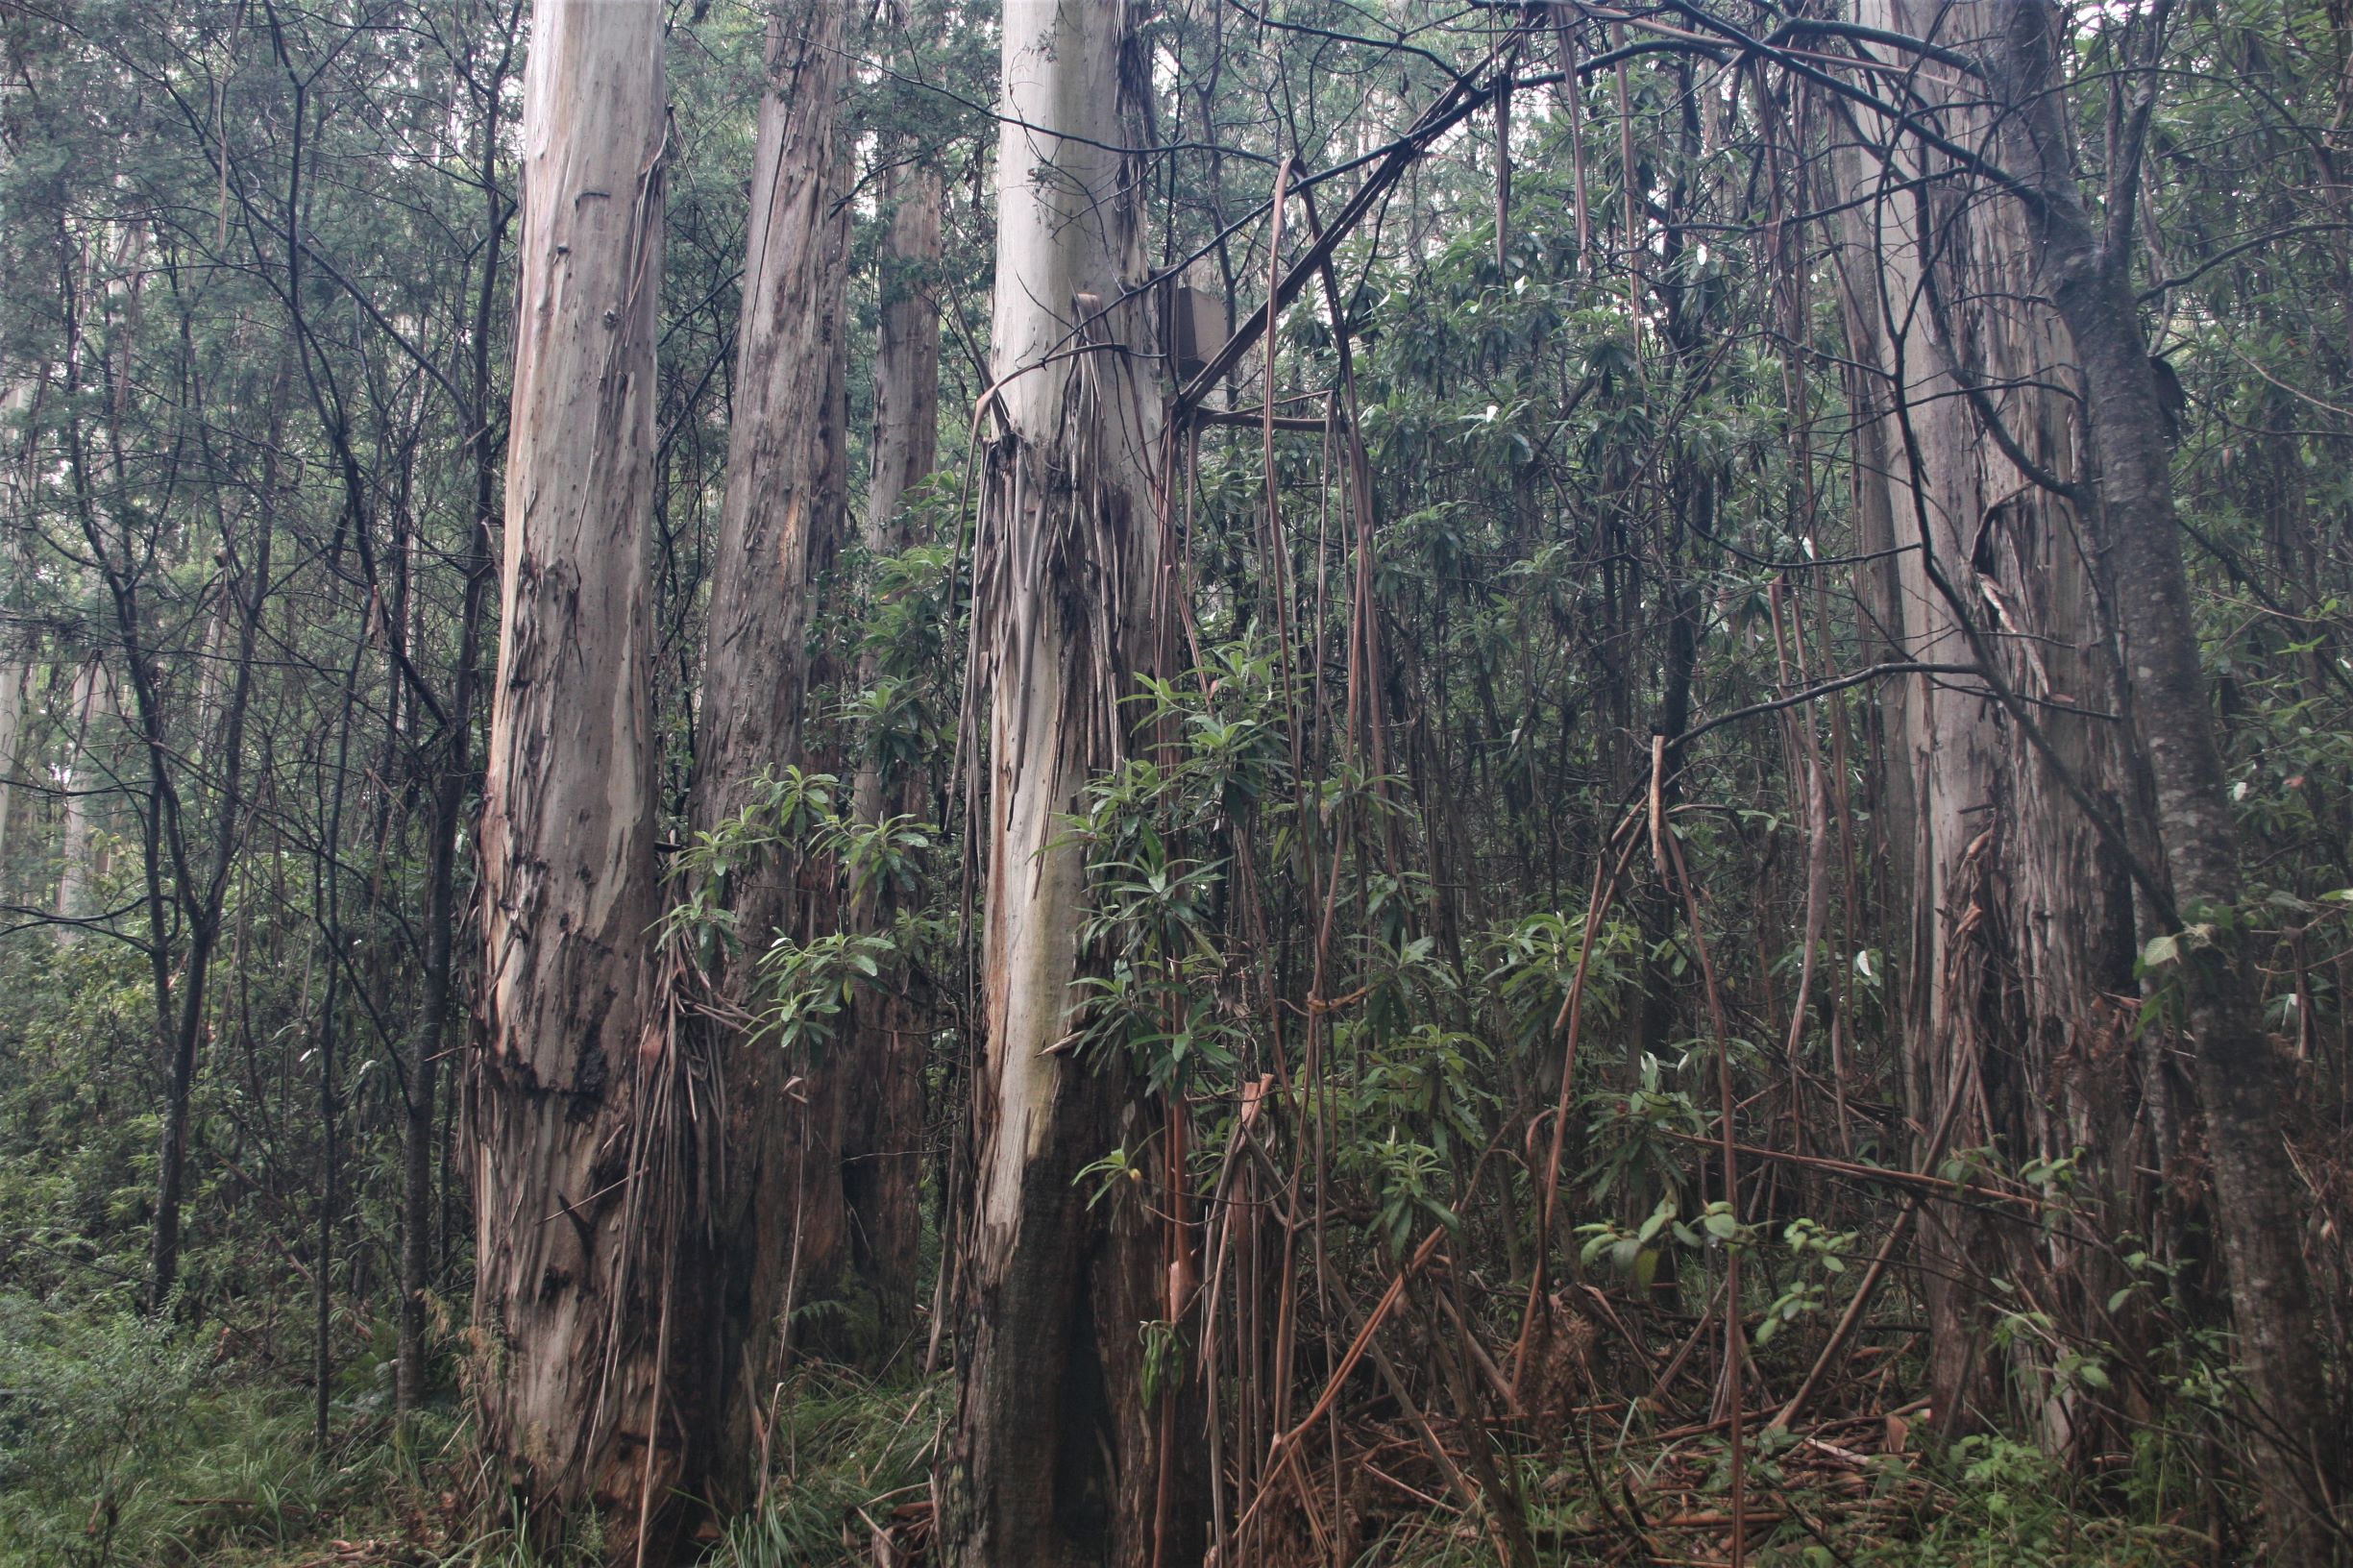 Itt jól látszik hogyan feslik az eukaliptuszfák kérge.